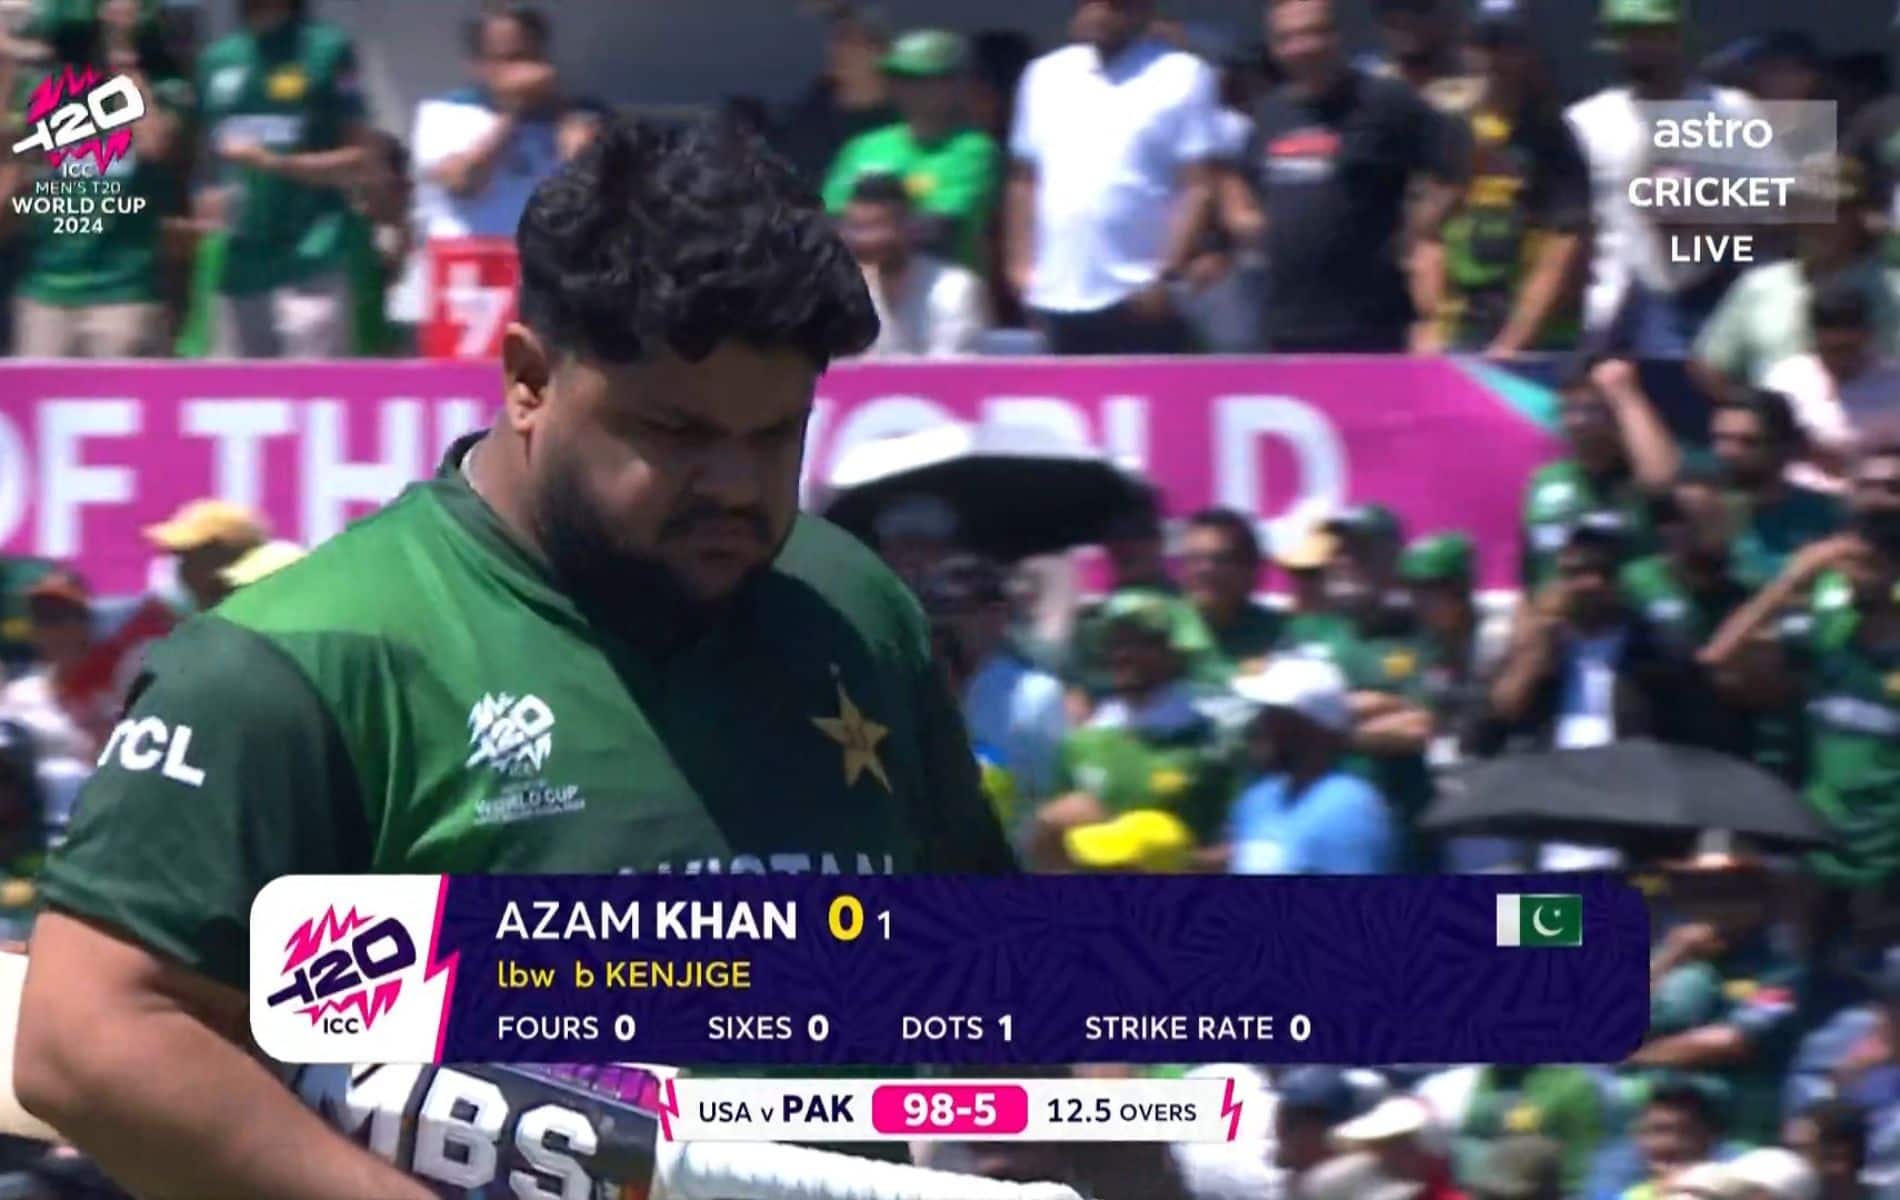 Pakistan batter Azam Khan got out for a golden duck in World Cup T20 (x.com)